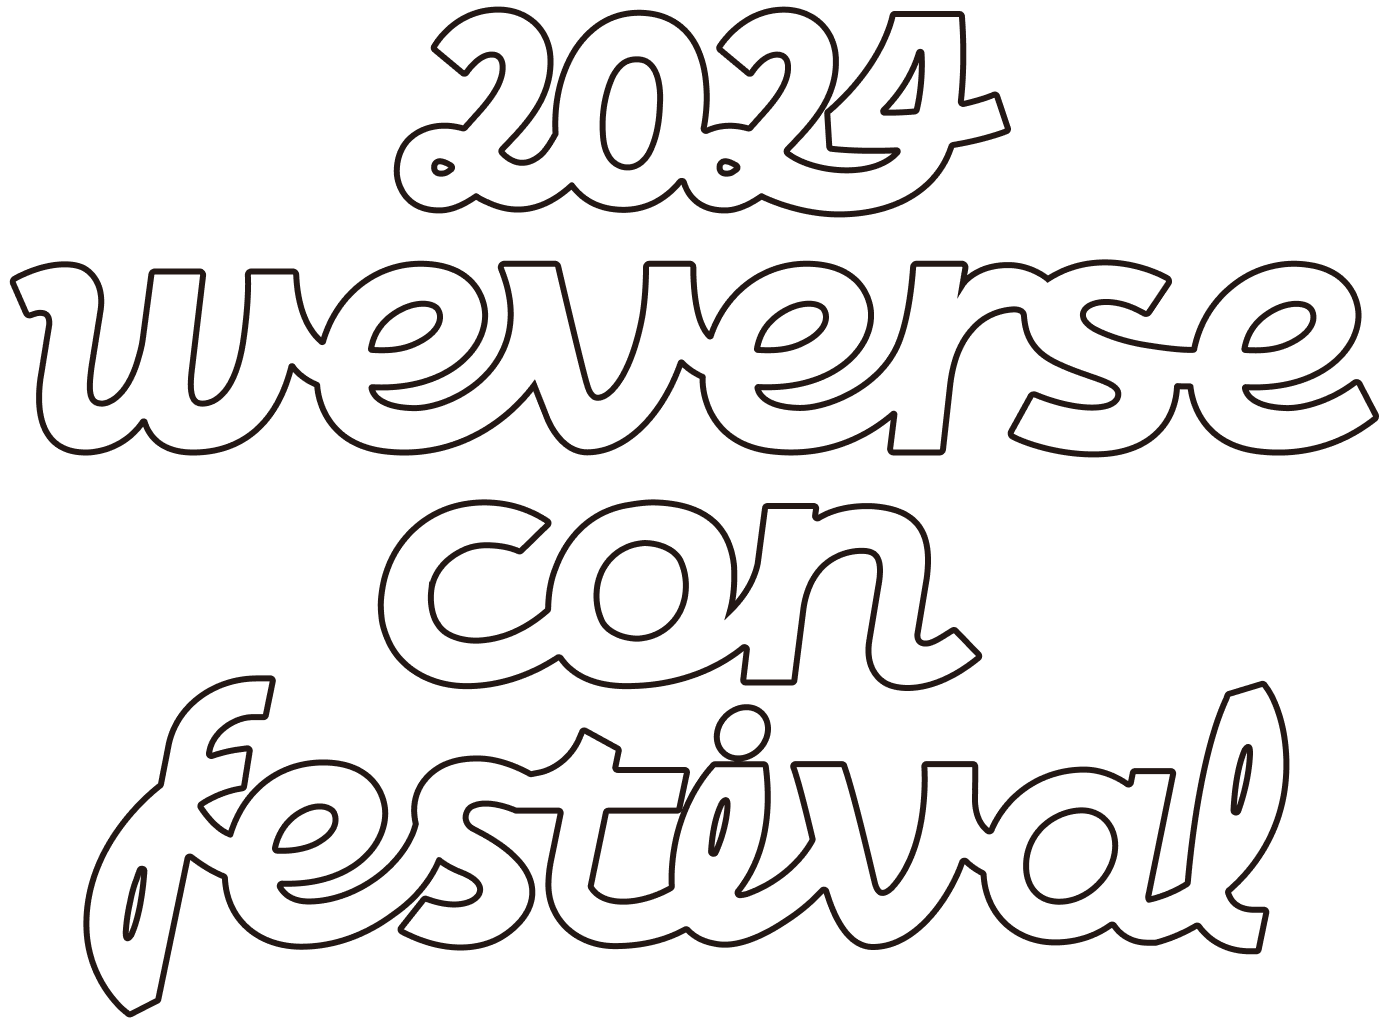 2024 weverse con festival